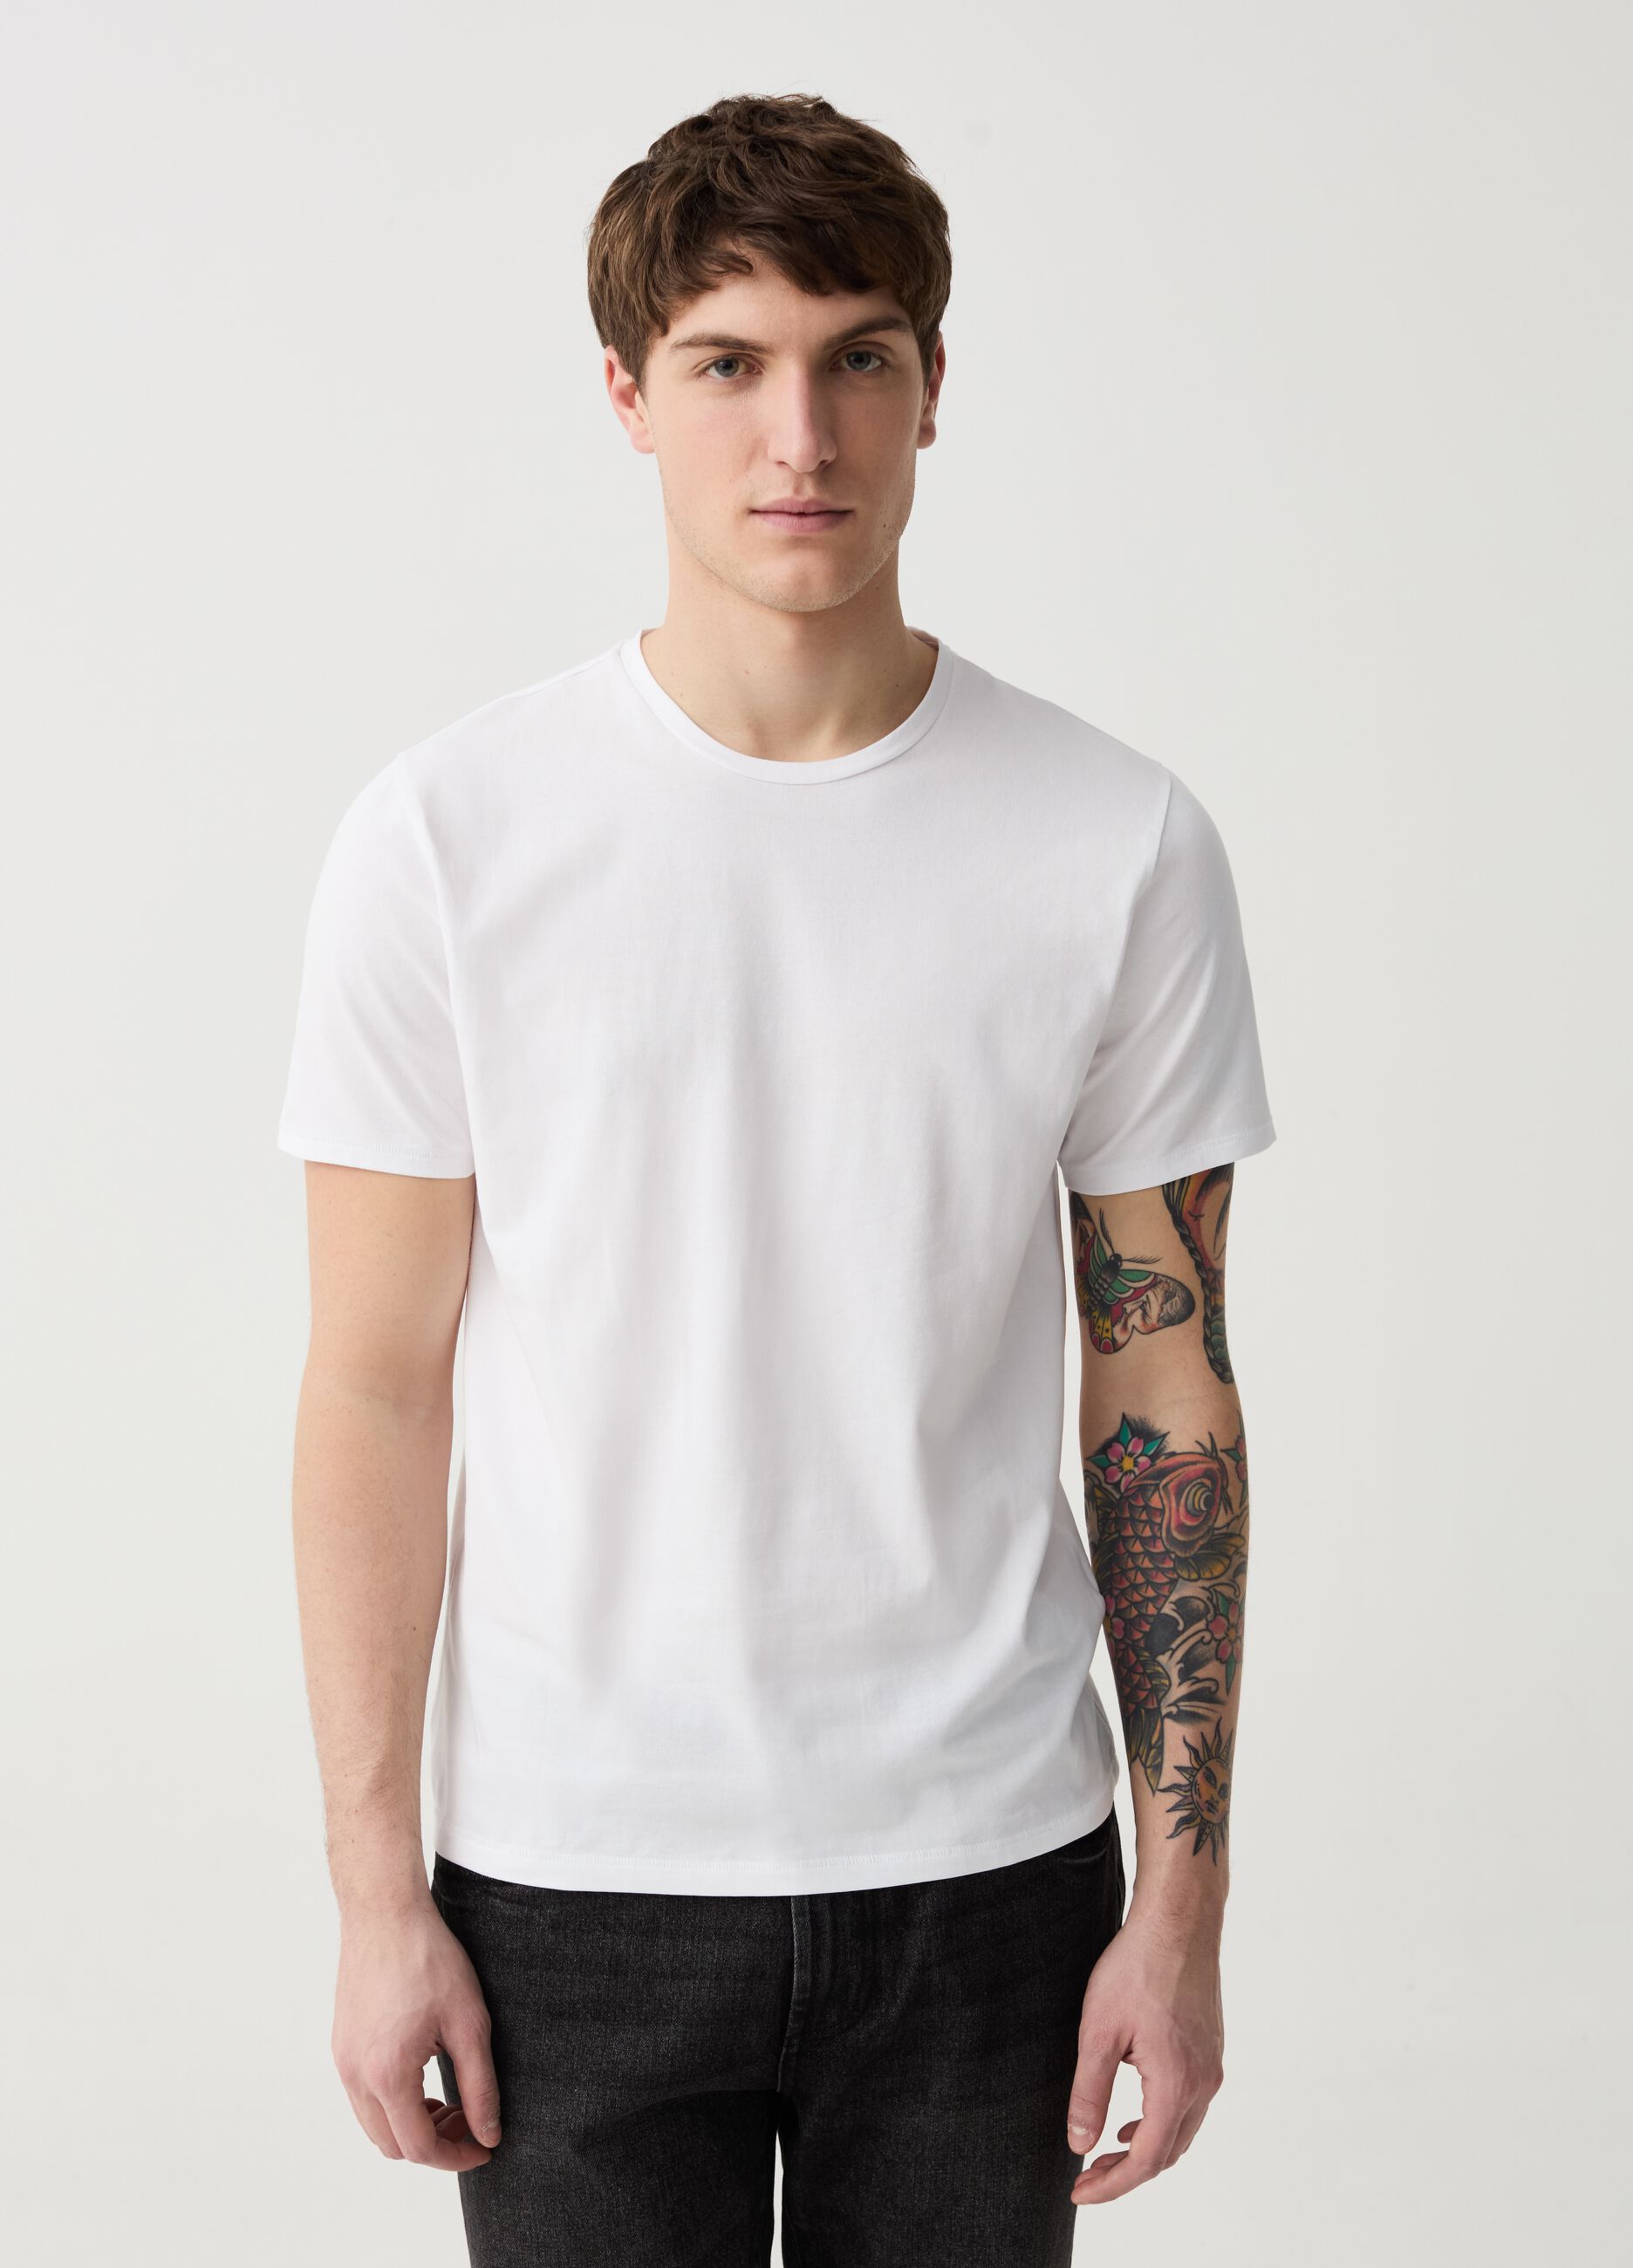 Camiseta slim fit de algodón orgánico elástico